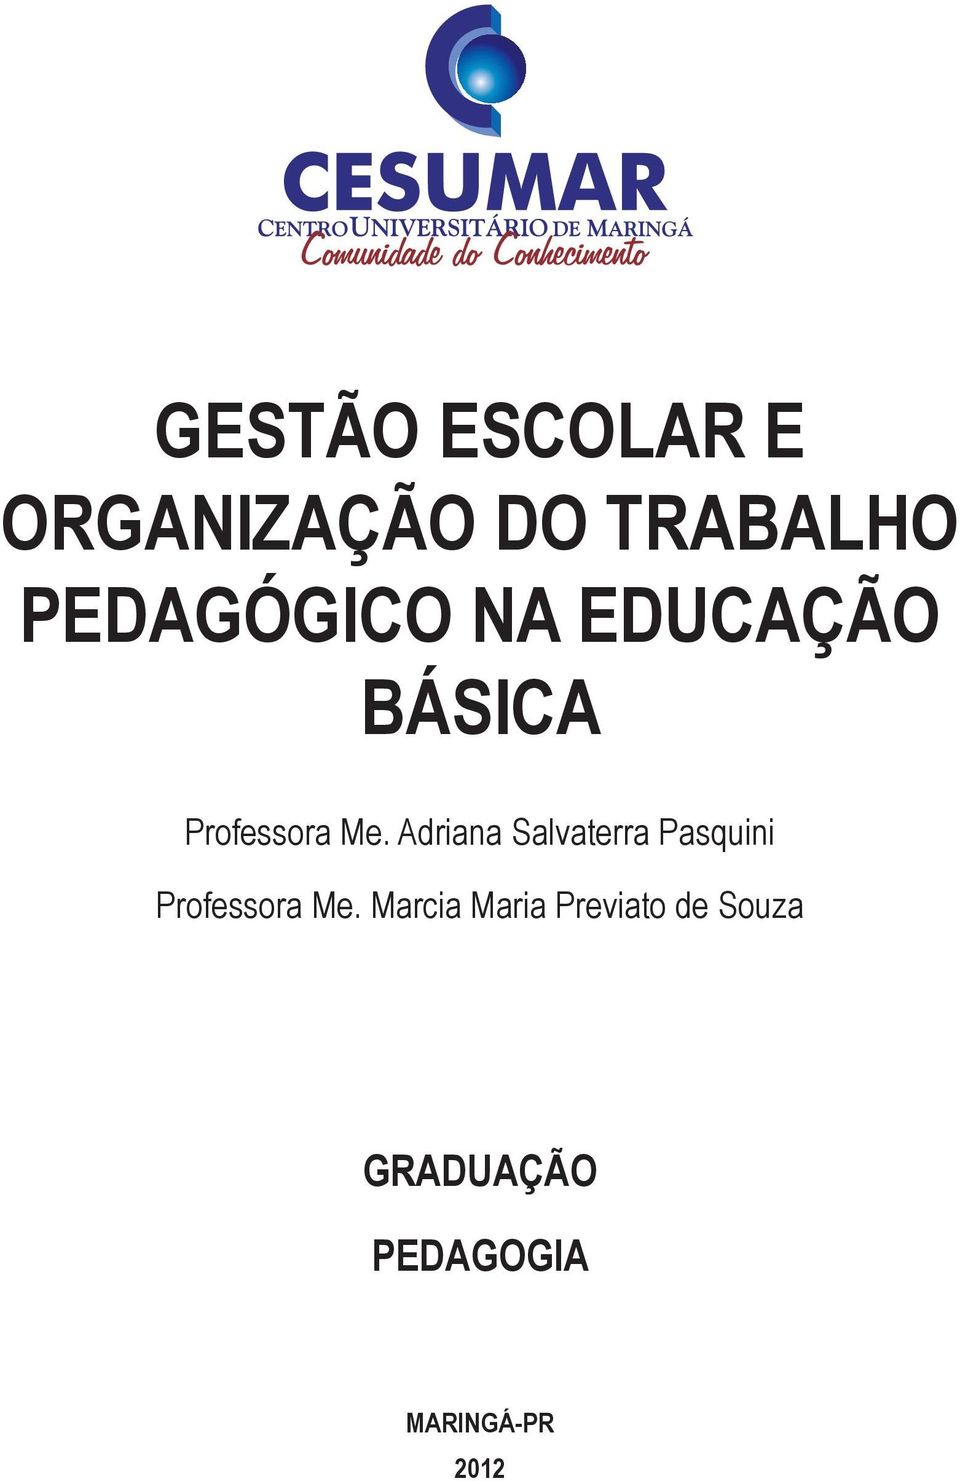 Adriana Salvaterra Pasquini Professora Me.